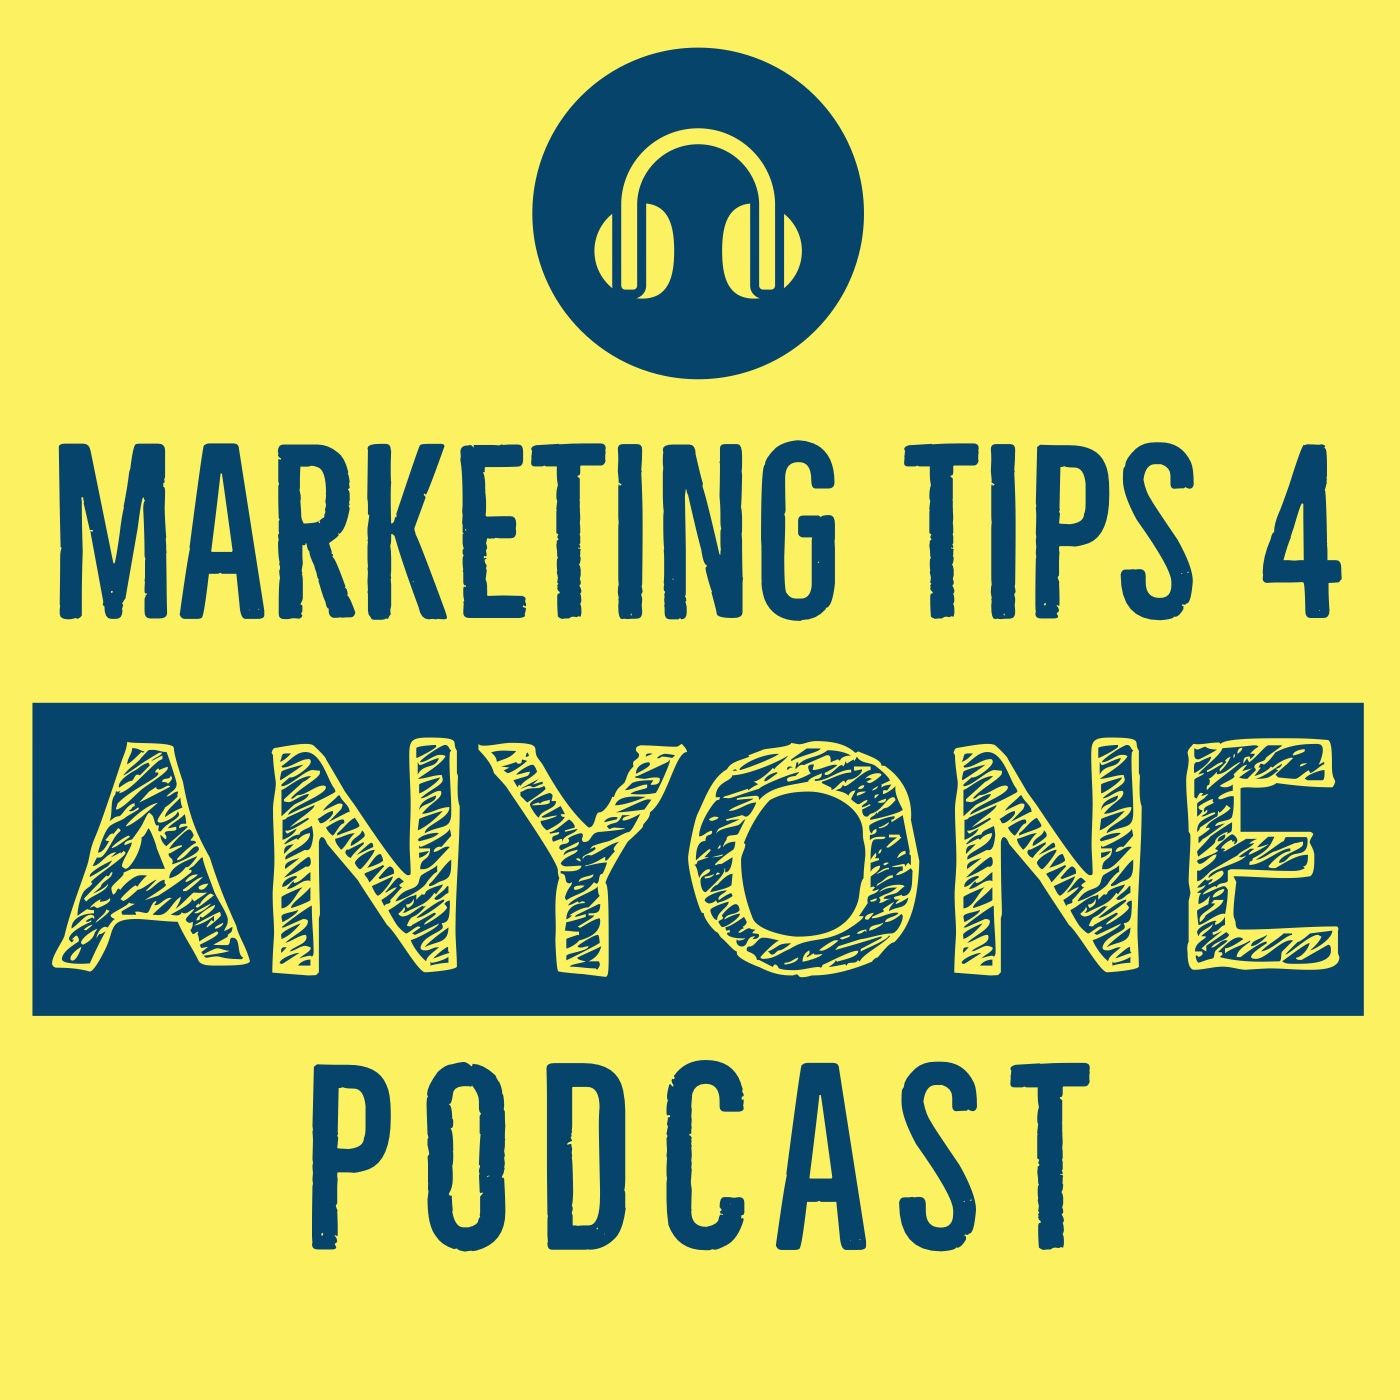 Marketing Tips 4 Anyone